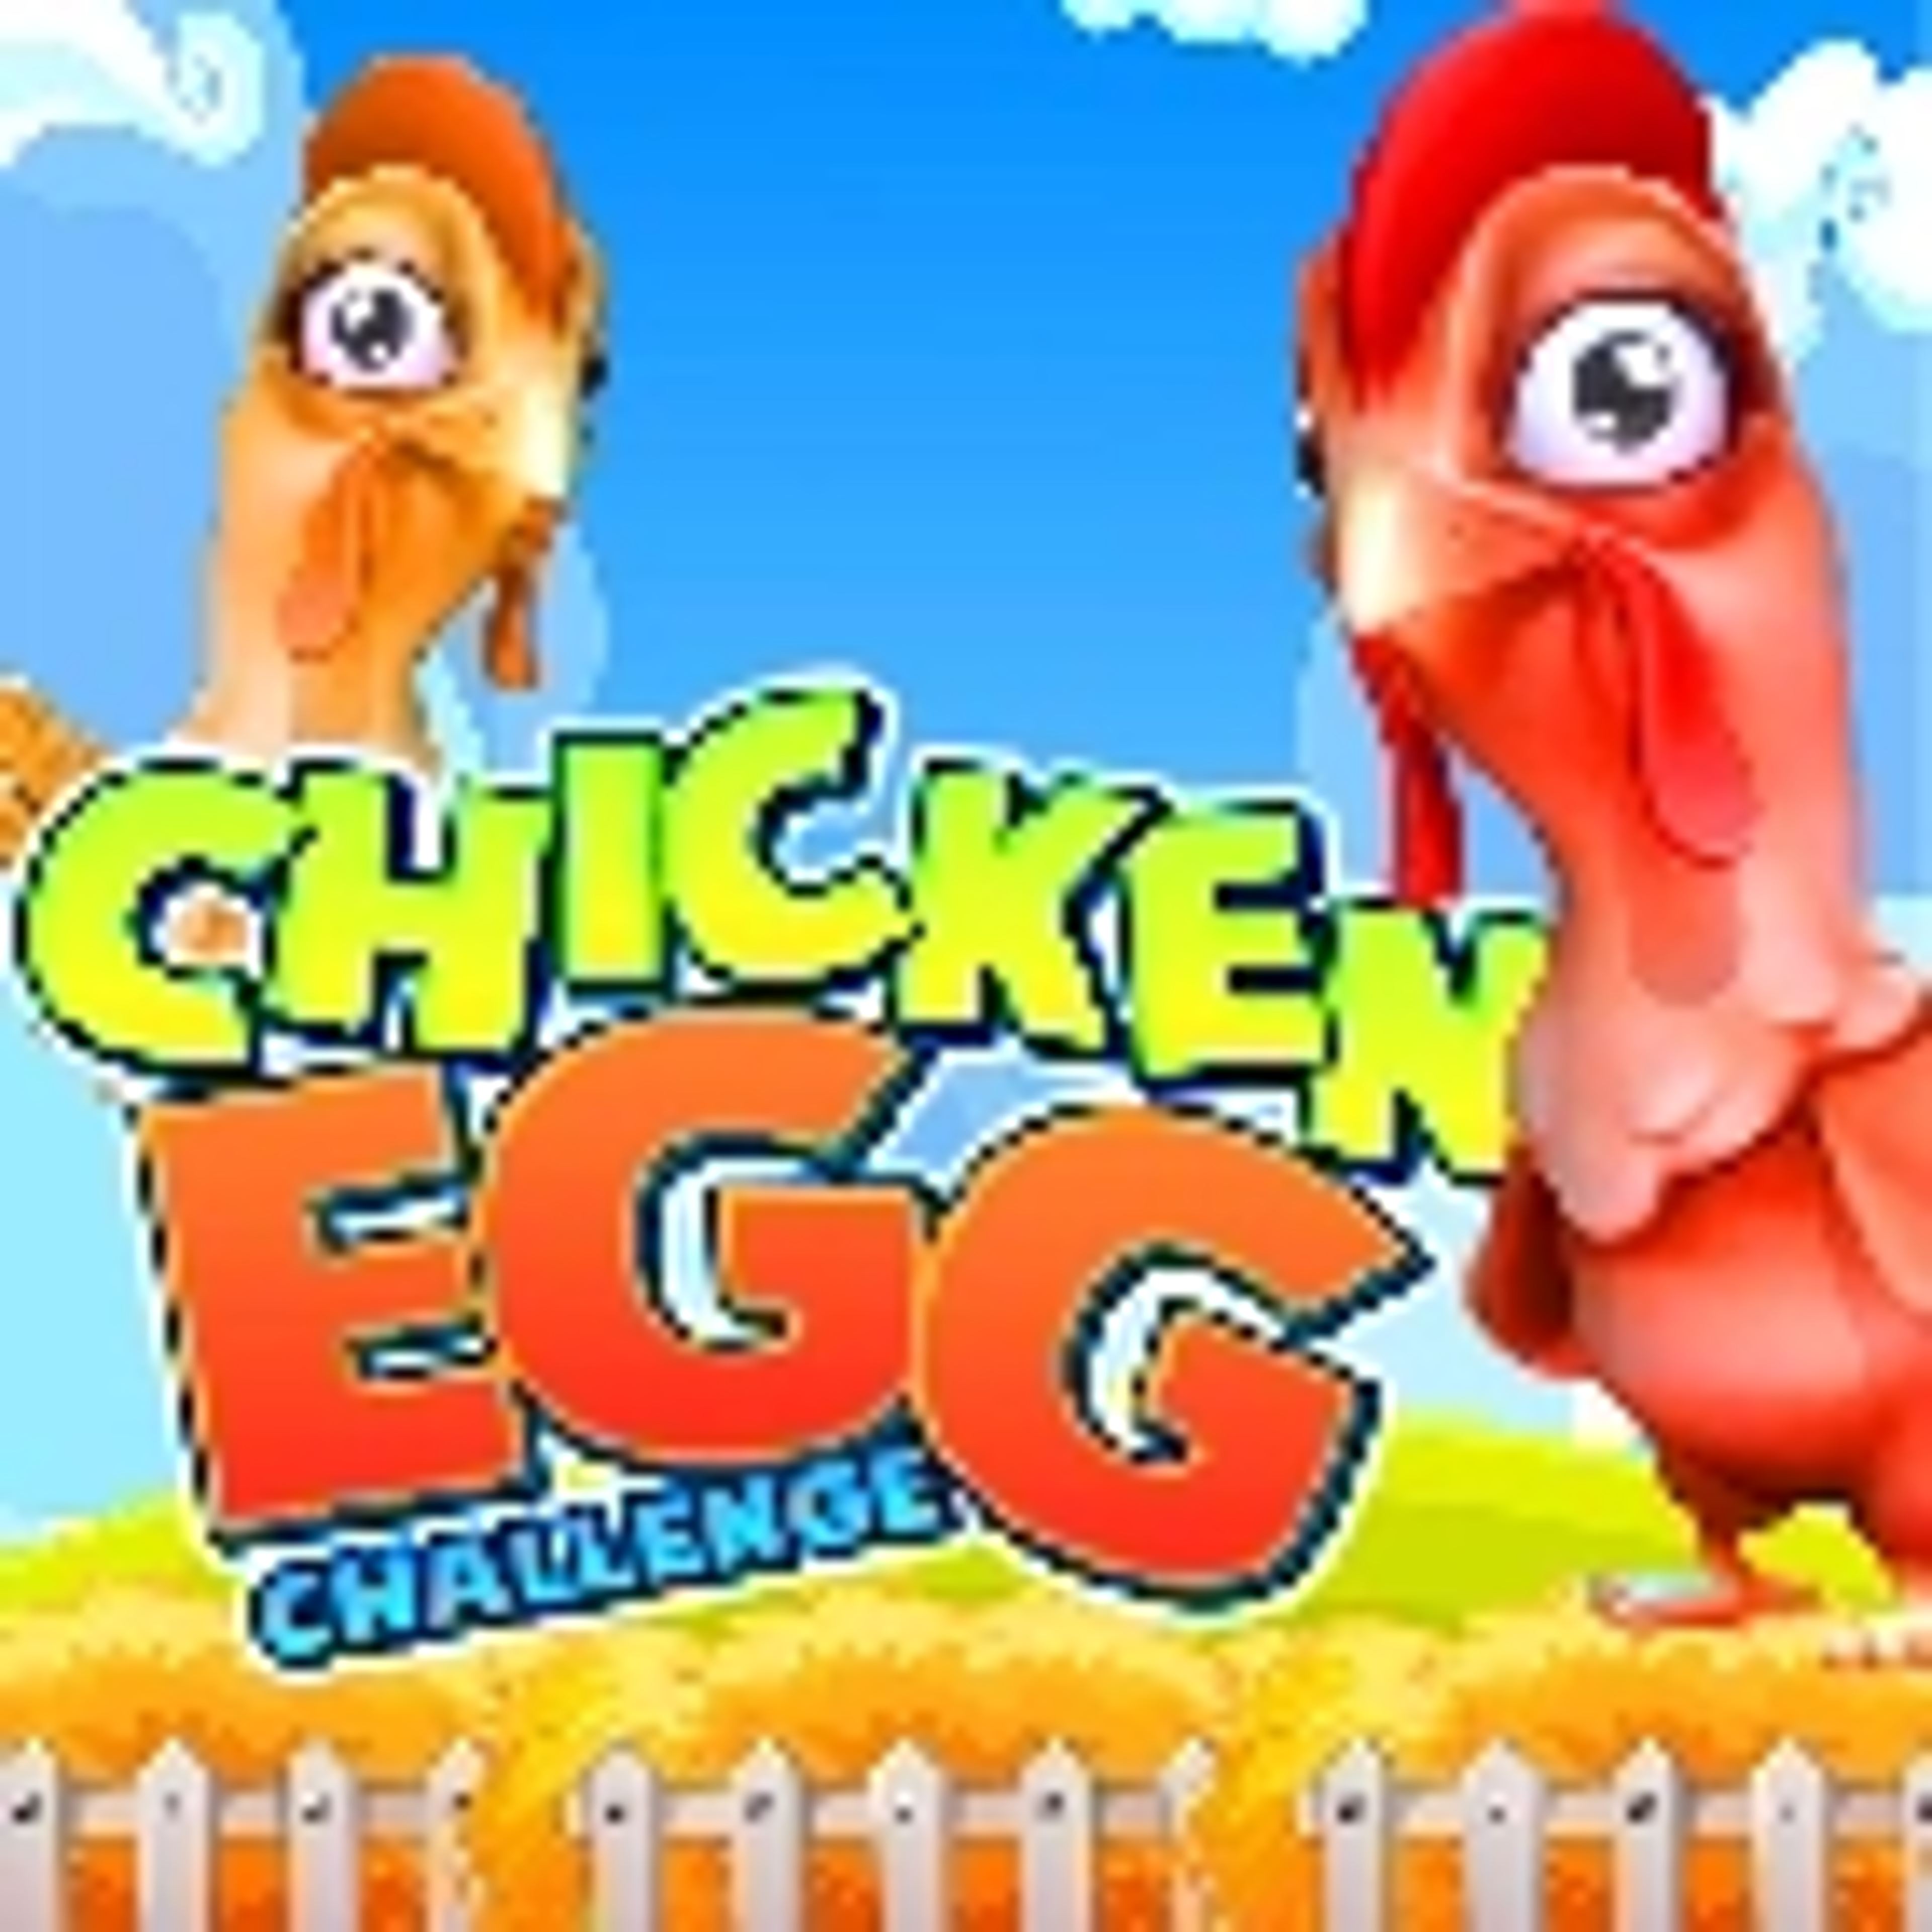 Chicken Egg Challenge